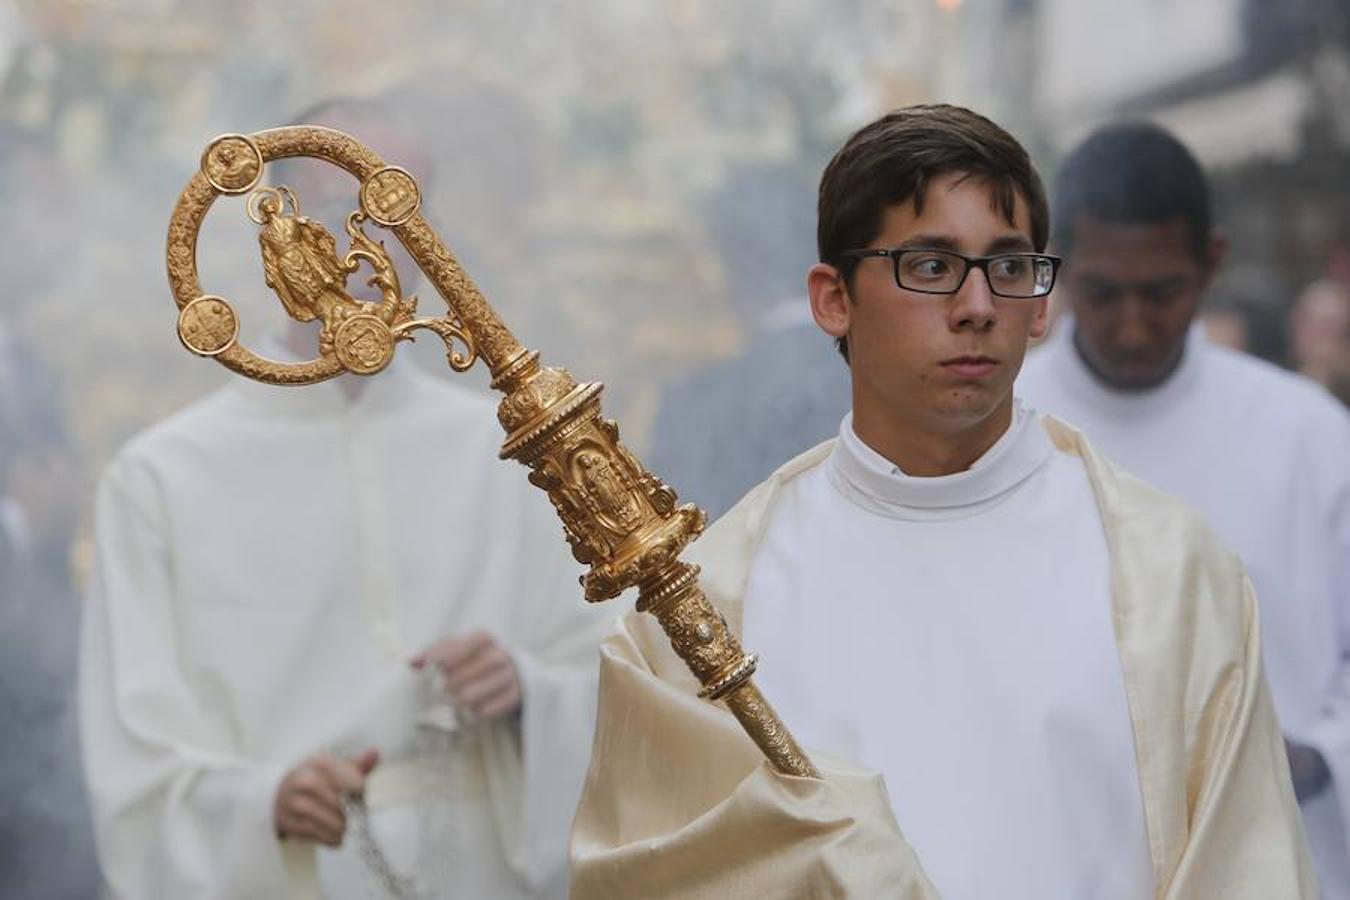 La procesión del Corpus Christi en Córdoba, en imágenes